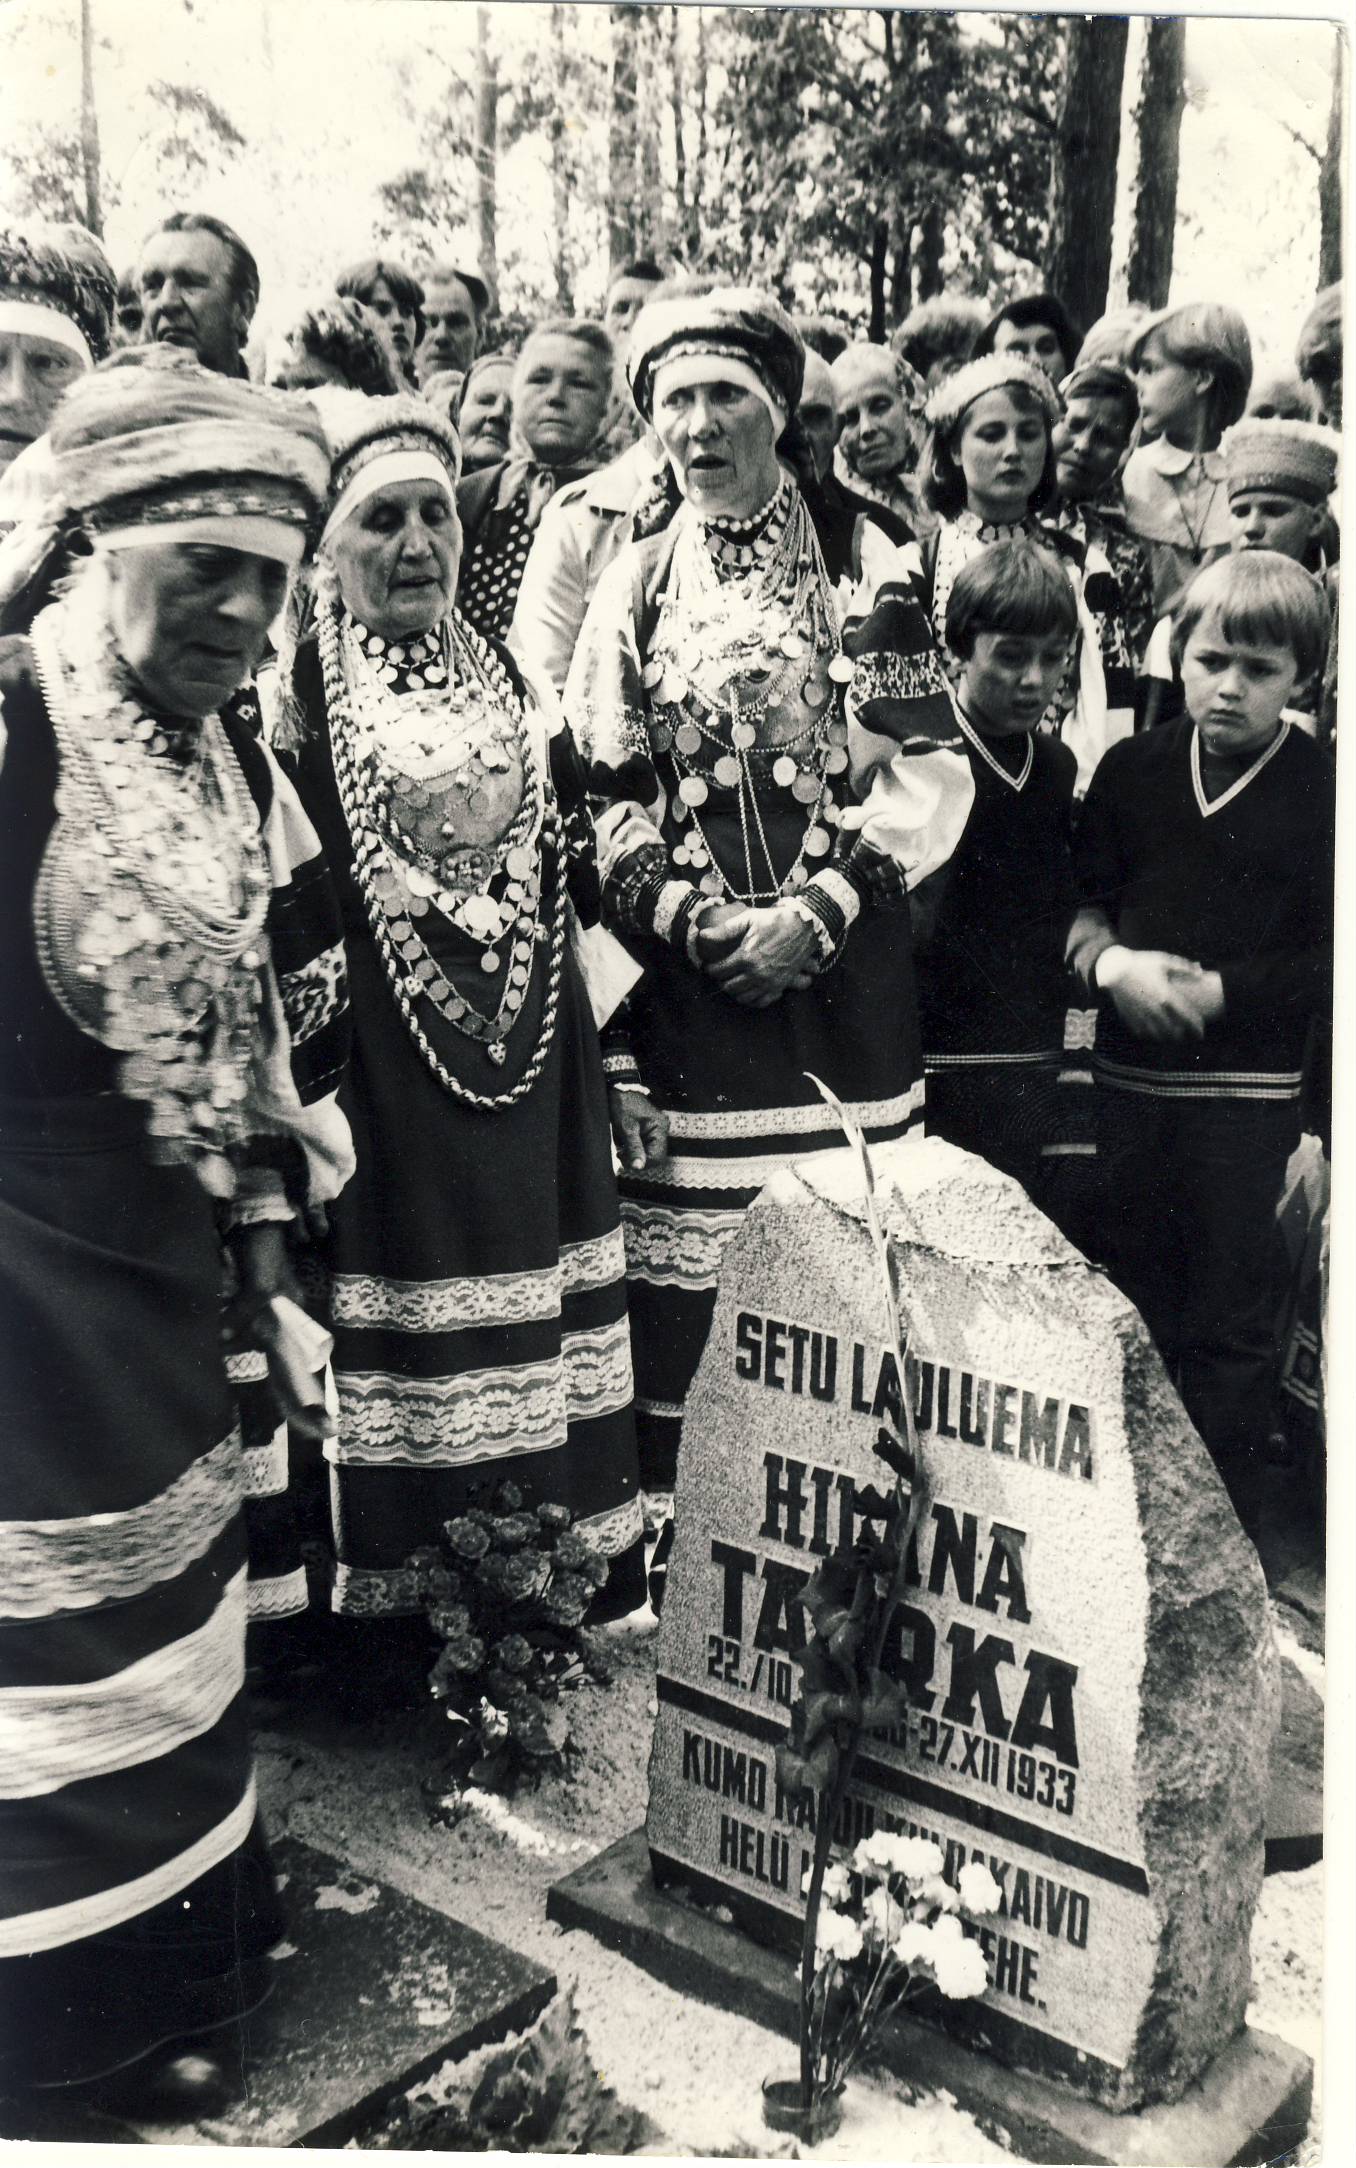 Hilana Taarka mälestuskivi avamine Obinitsa kalmistul, 1986.Helbi naised leelotamas.